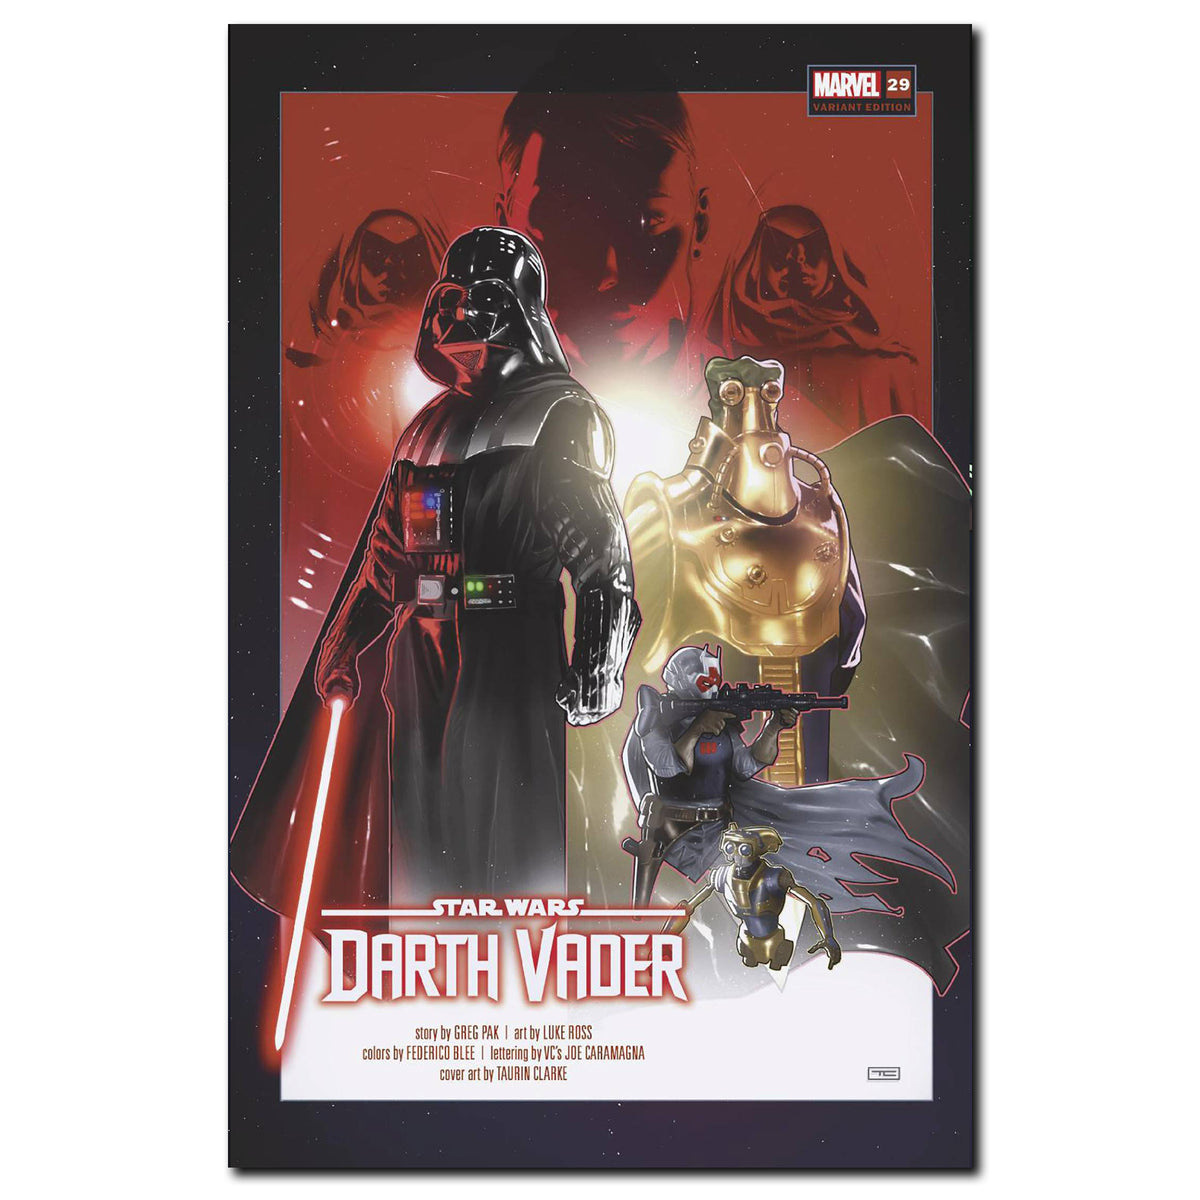 Star Wars Darth Vader #29 Cover Variant CLARKE FINALSALE